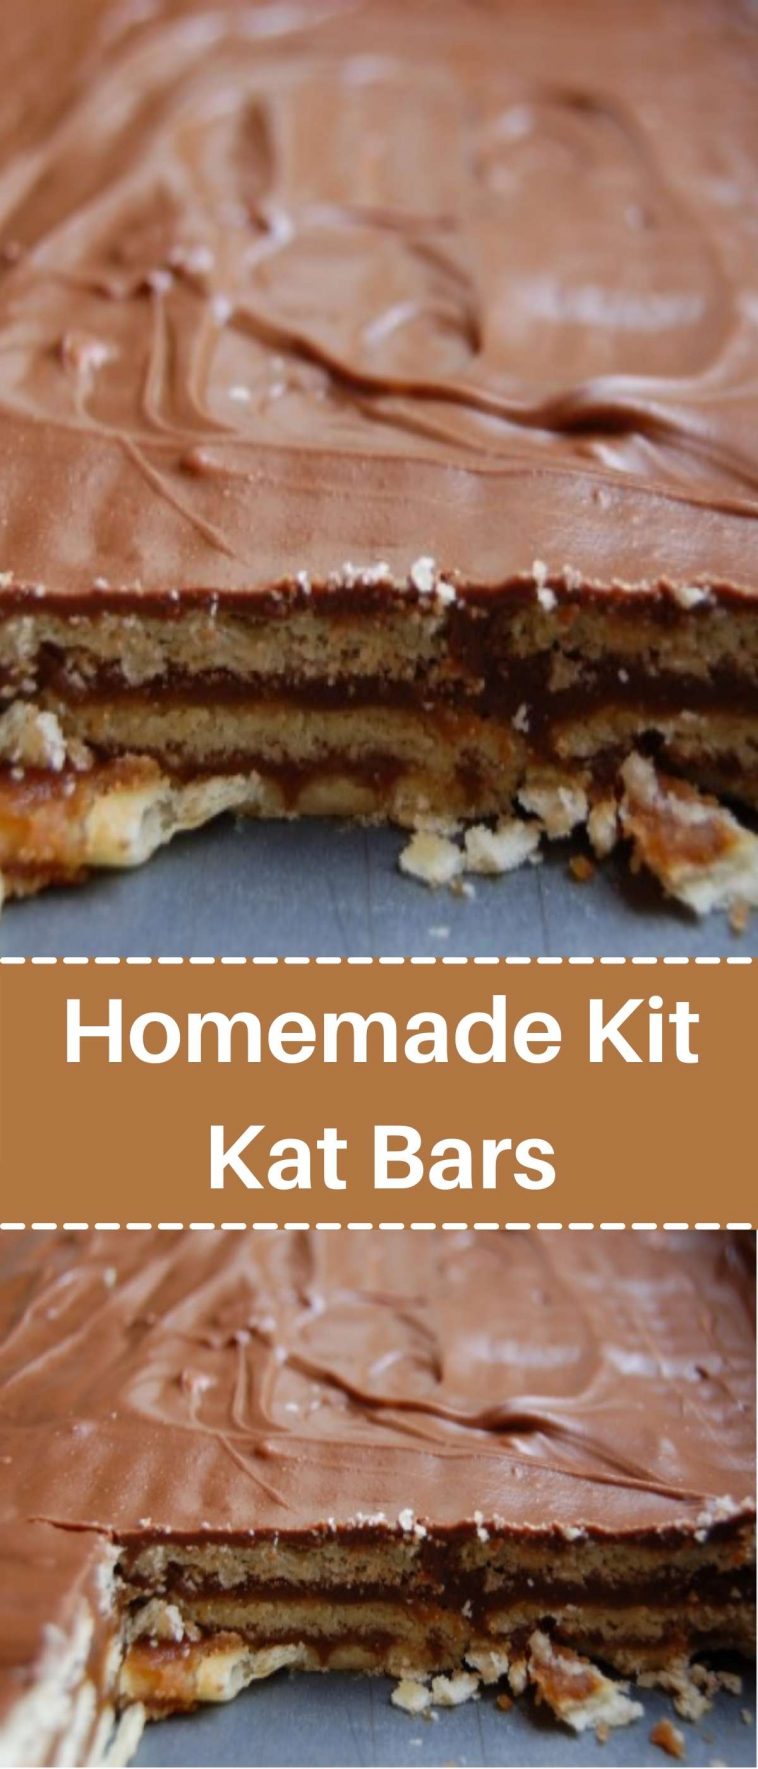 Homemade Kit Kat Bars